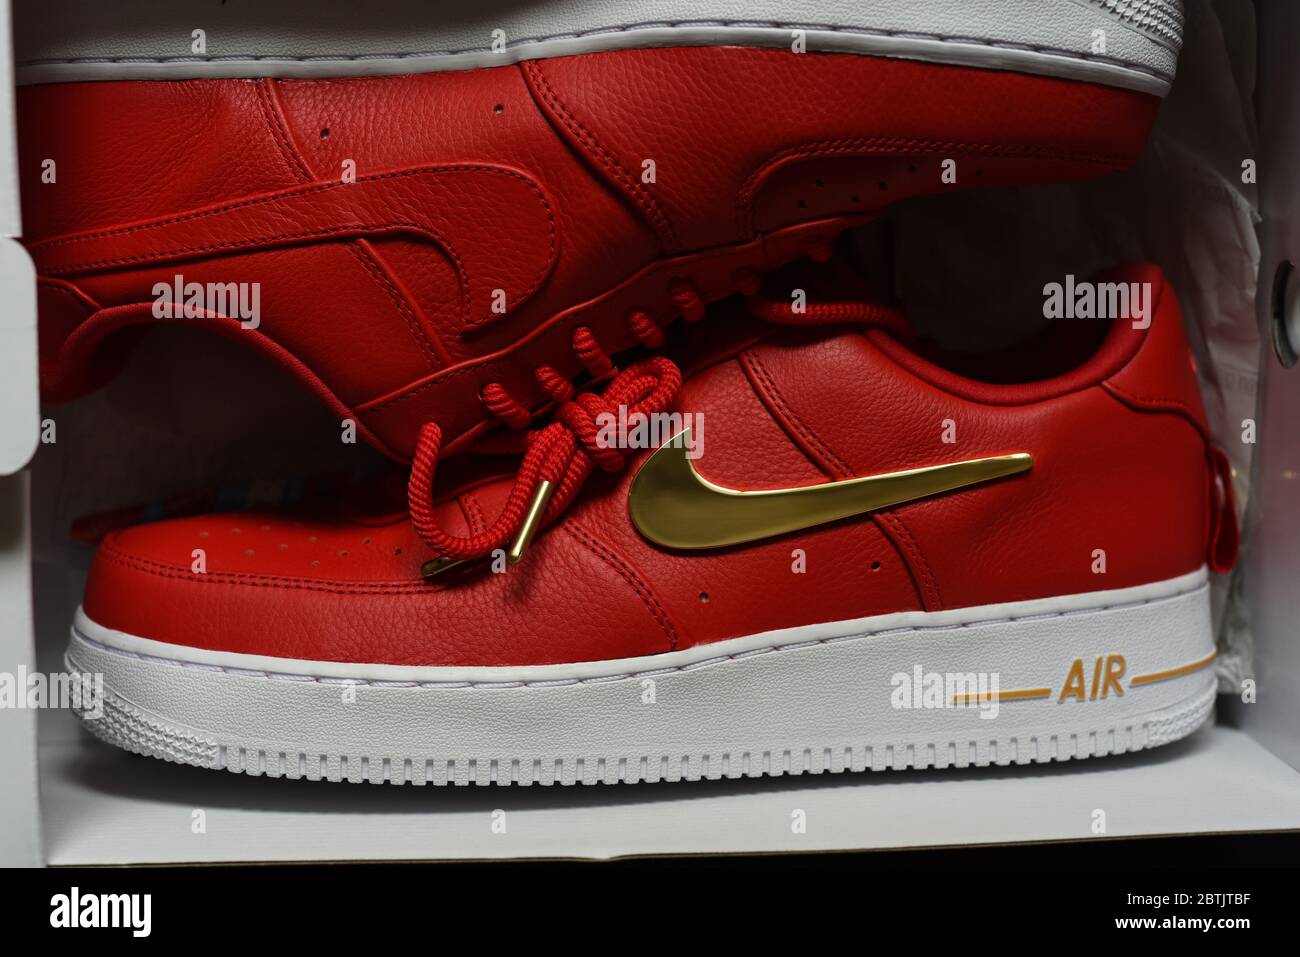 Une sneaker sportive à collectionner de Nike, un modèle Air avec des  surpers rouges, une semelle blanche et des touches dorées, dont le célèbre  logo Swoosh et le TI Photo Stock -